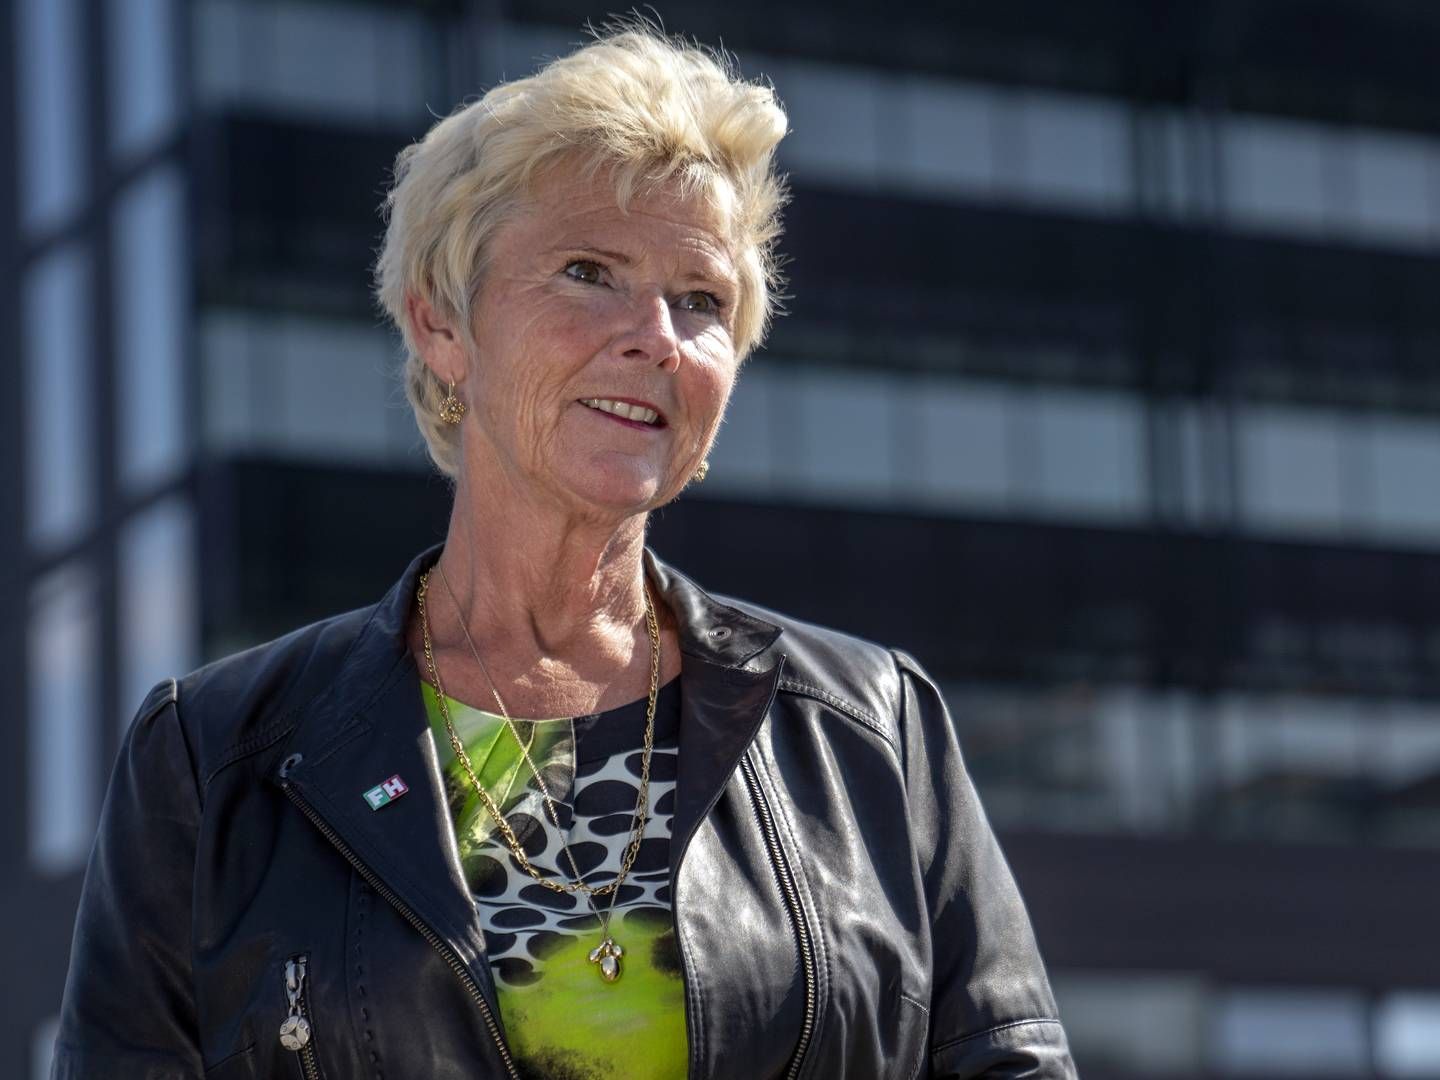 Formand for FH, Lizette Risgaard, kritiserer ny udbudslov for ikke at ændre på noget væsentligt i forhold til f.eks. social dumpning. | Foto: Stine Bidstrup/ERH